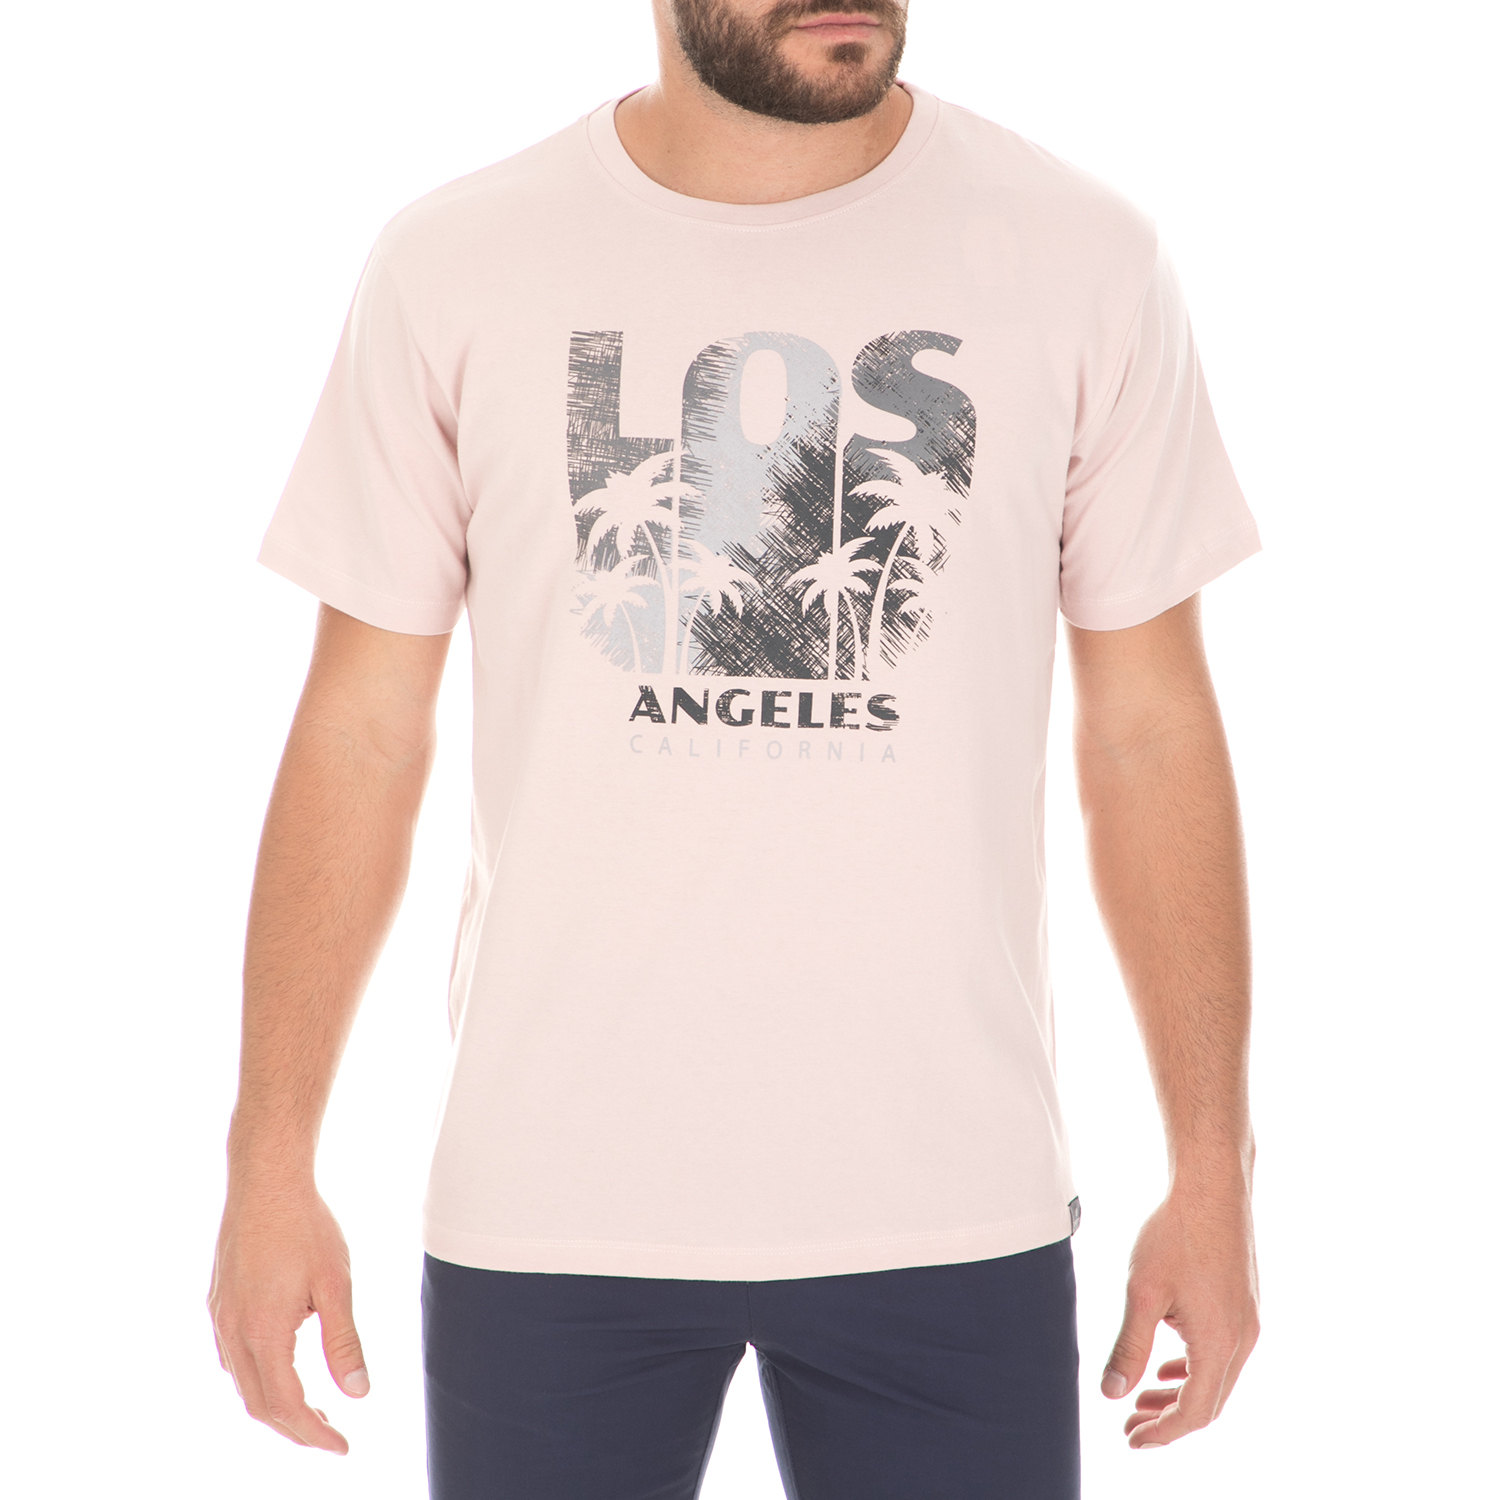 Ανδρικά/Ρούχα/Μπλούζες/Κοντομάνικες DORS - Ανδρική μπλούζα DORS ροζ